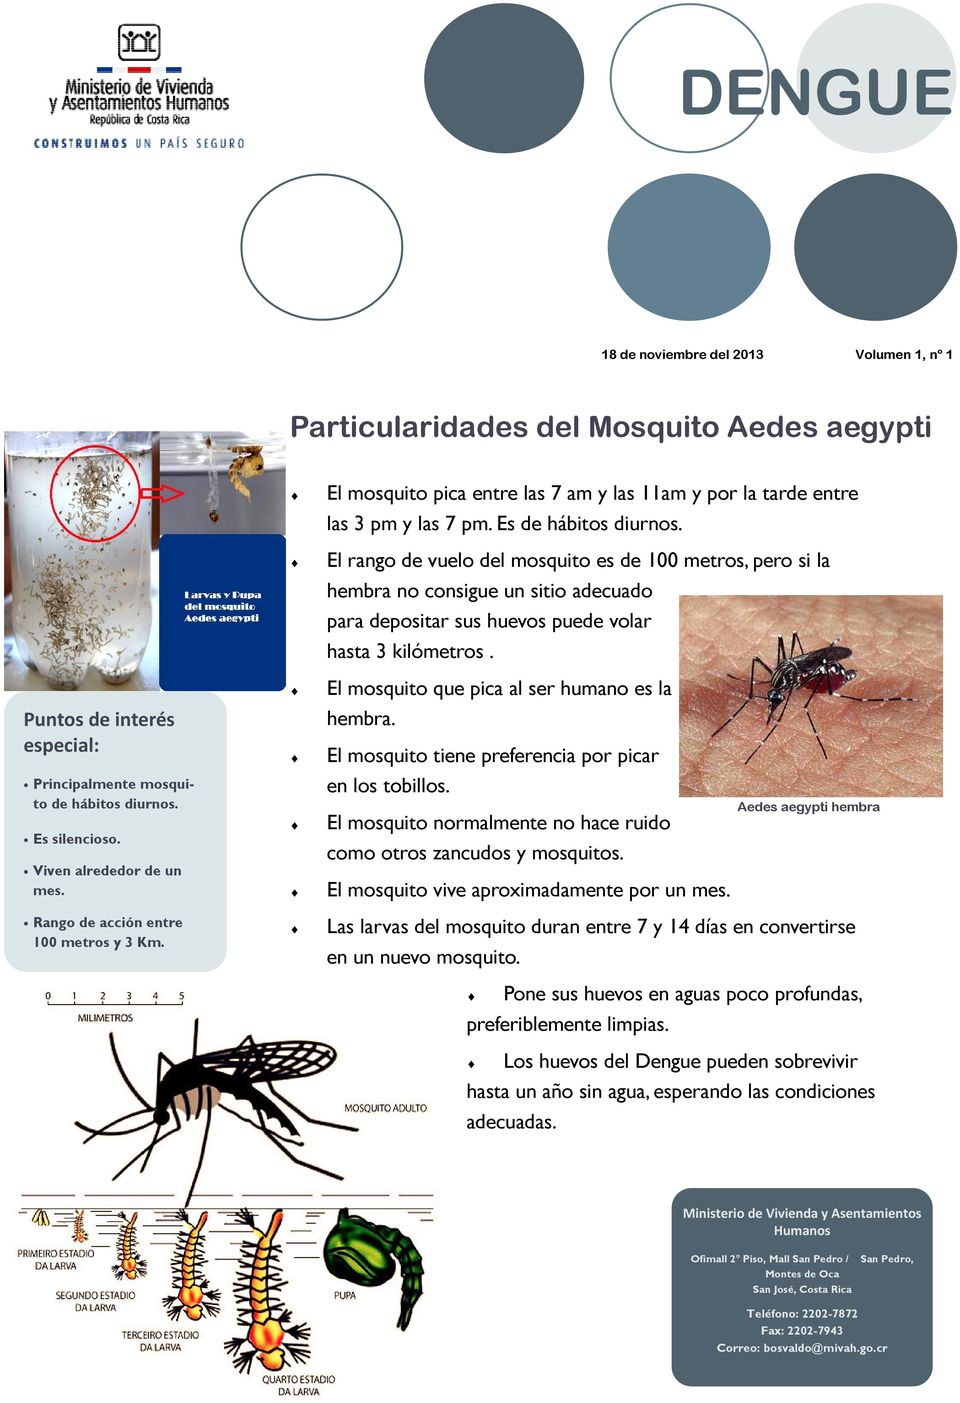 El mosquito que pica al ser humano es la Puntos de interés especial: hembra. El mosquito tiene preferencia por picar Principalmente mosquito de hábitos diurnos. Es silencioso.